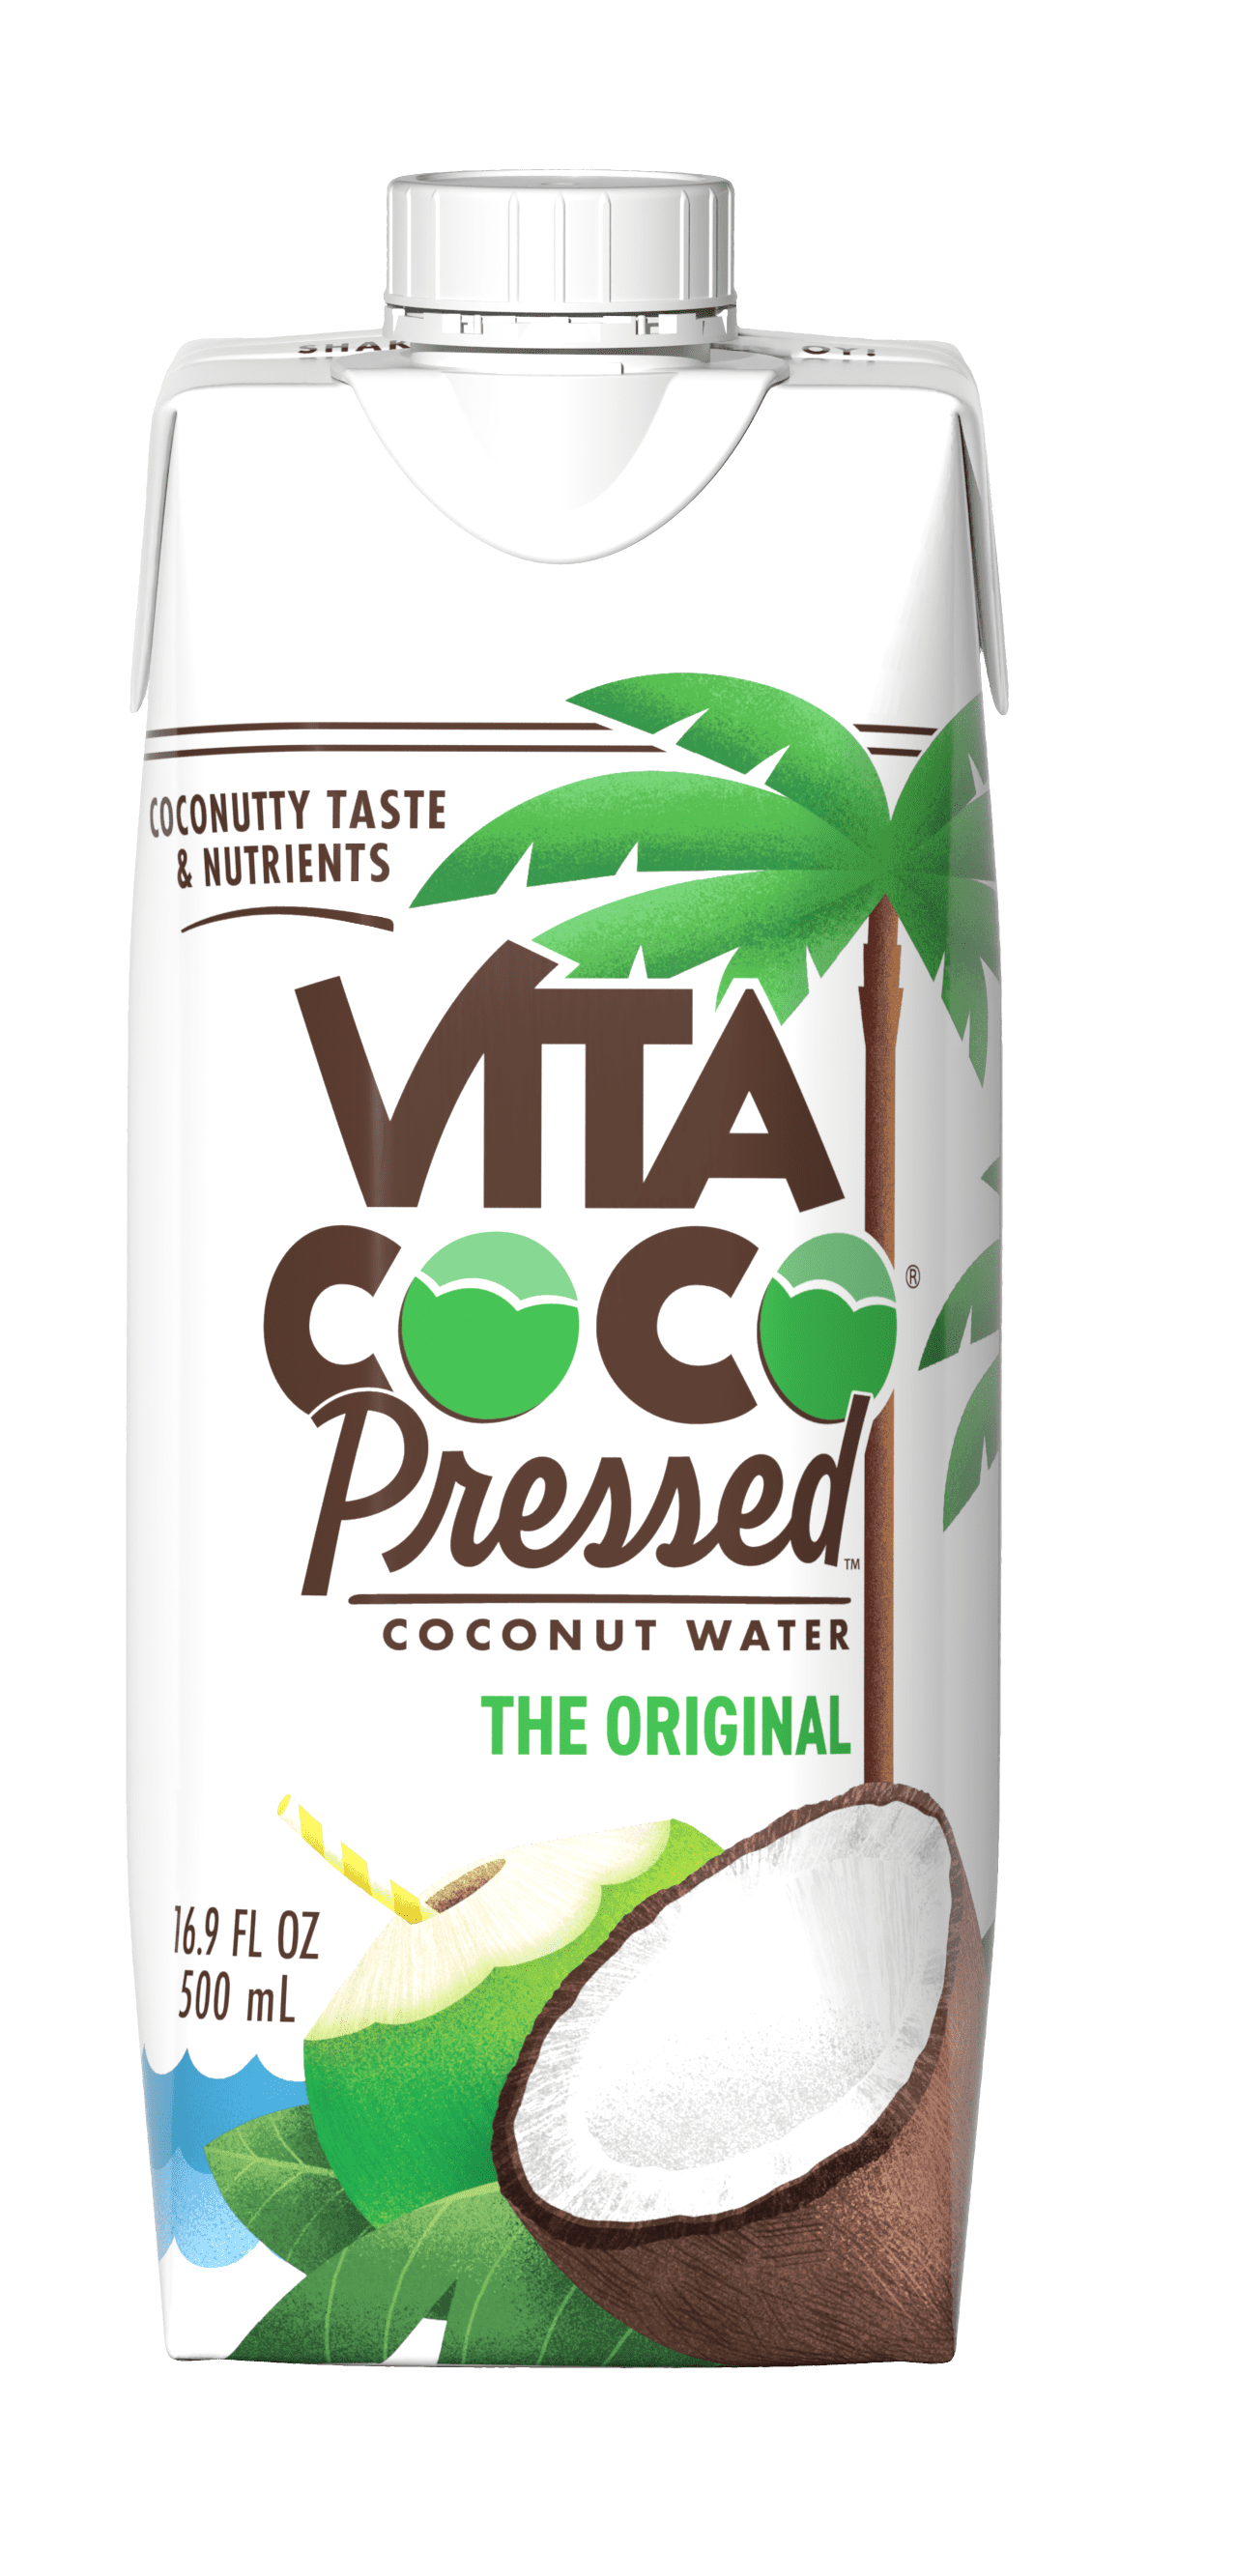 Vita Coco Pressed Coconut Water The Original 16.9 Fl Oz Box